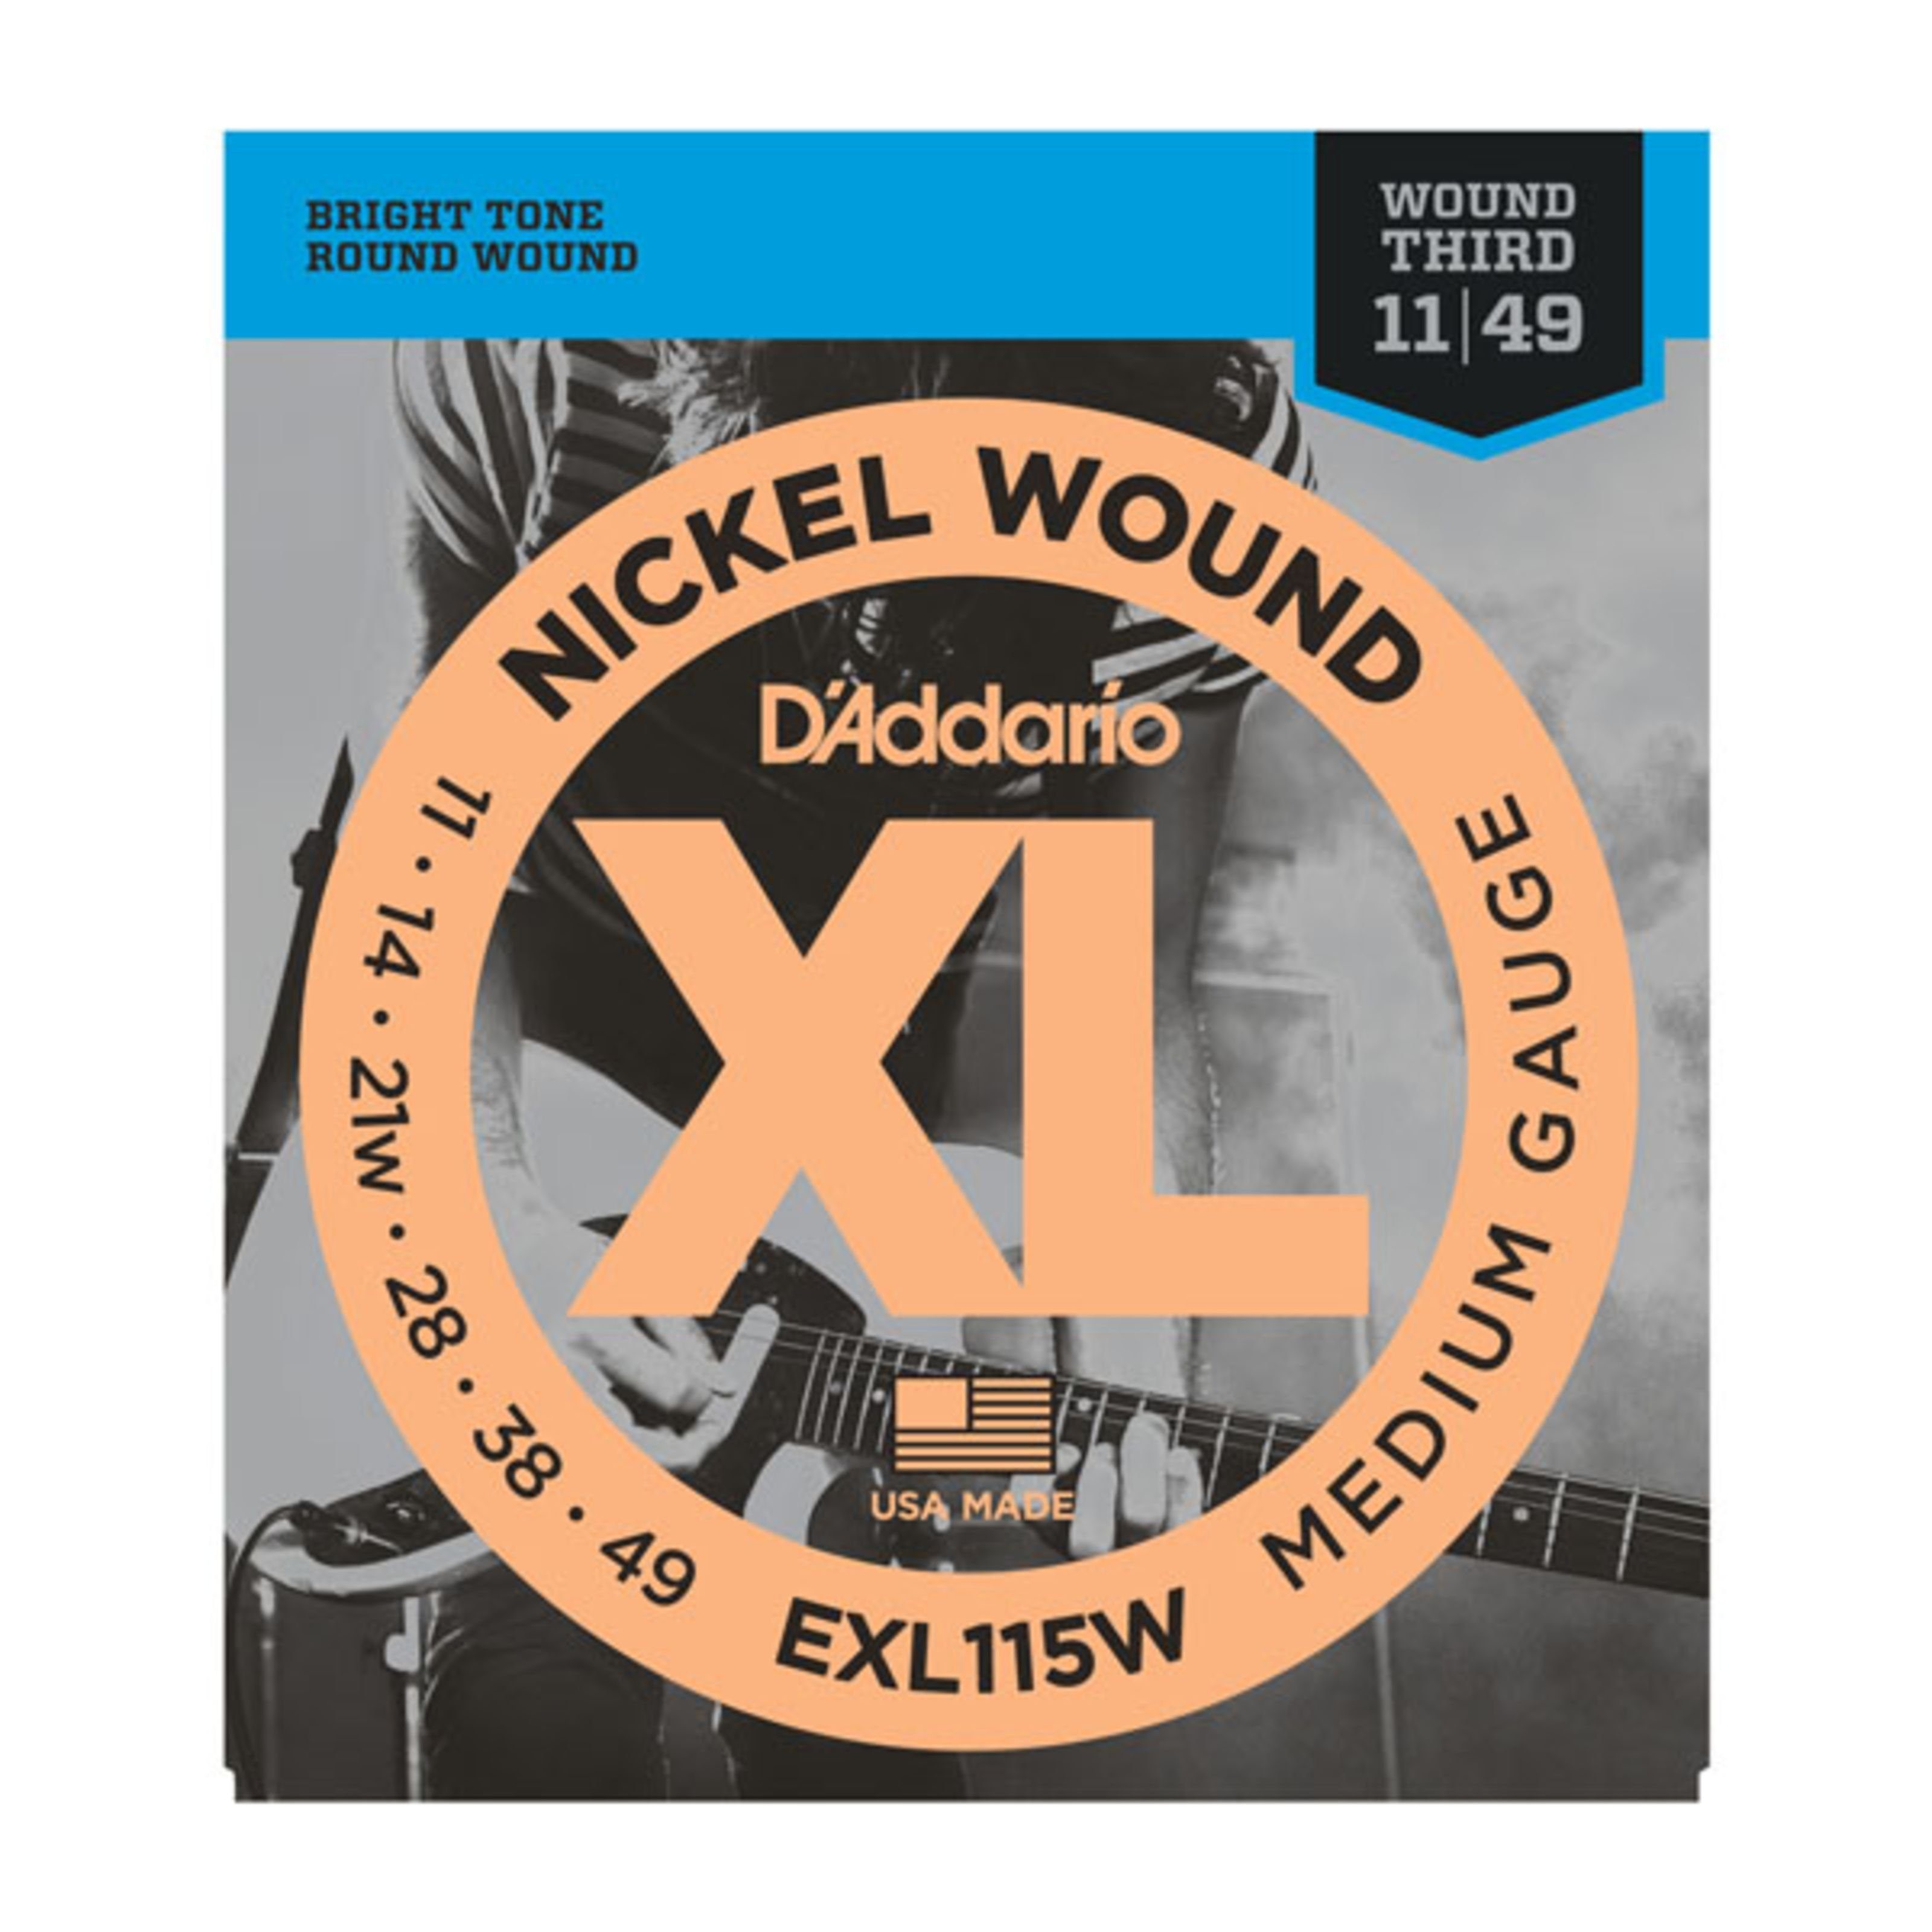 Wound Spielzeug-Musikinstrument, E-Gitarrensaiten 11-49 Daddario g3 EXL115W wound - Nickel